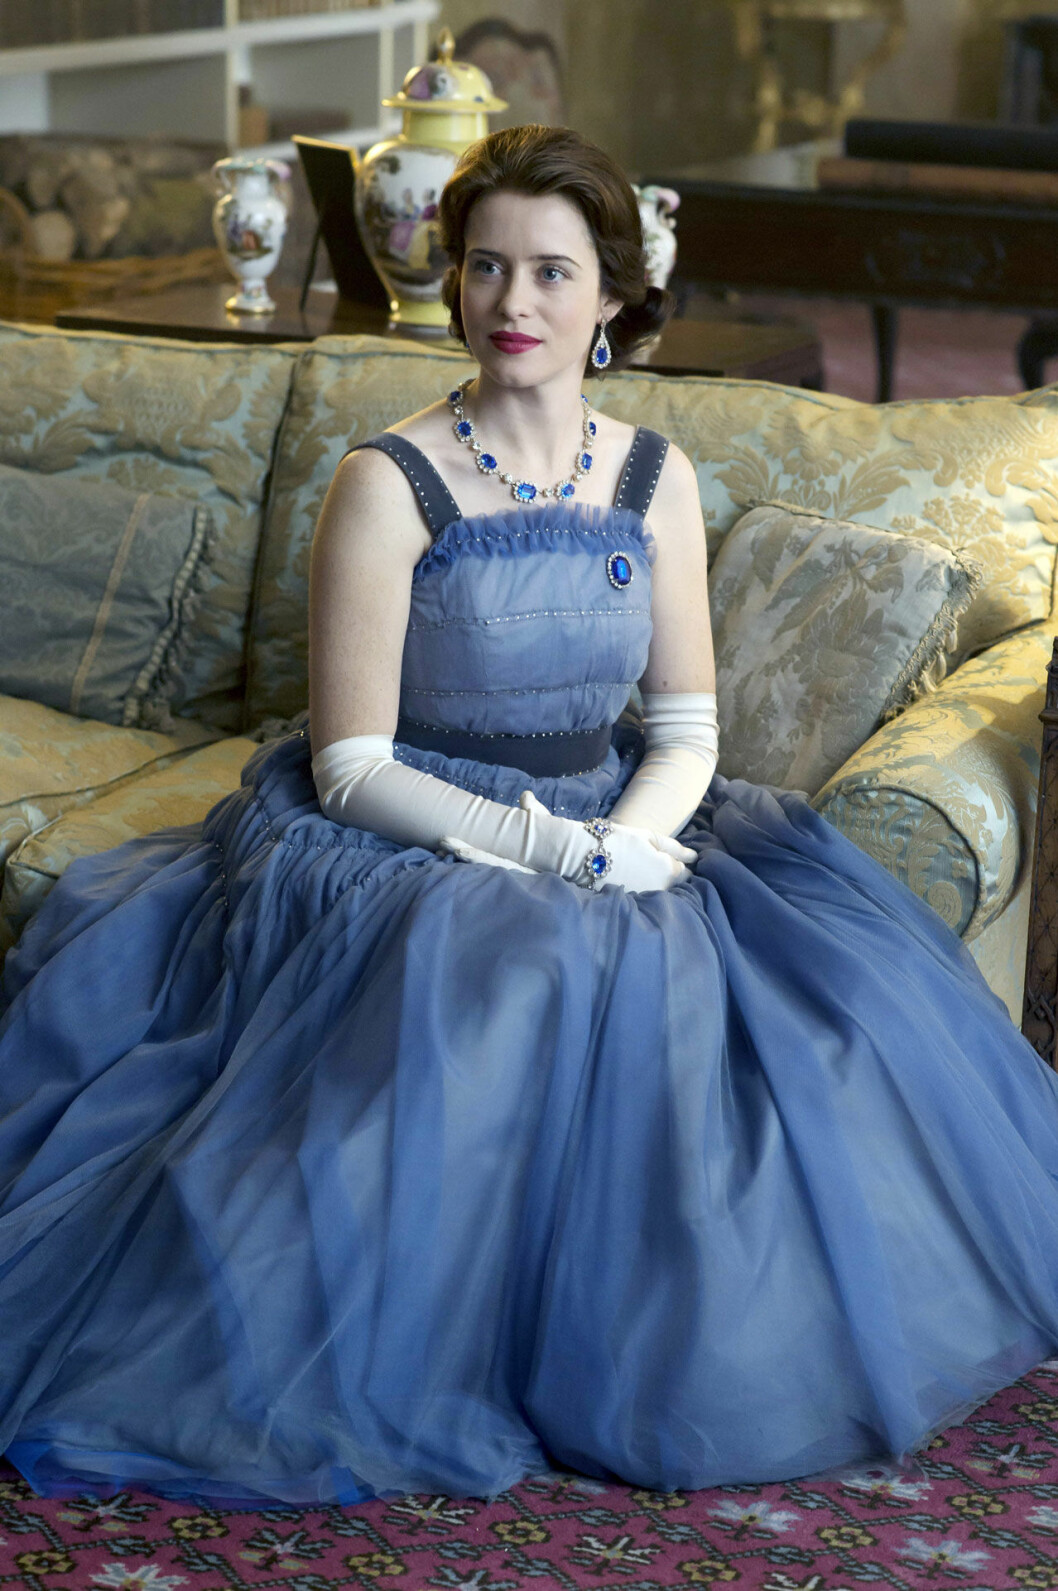 Här förstärker soffans tyg klänningens skira kvalitet, medan den blå färgen symboliserar drottningens ungdom.